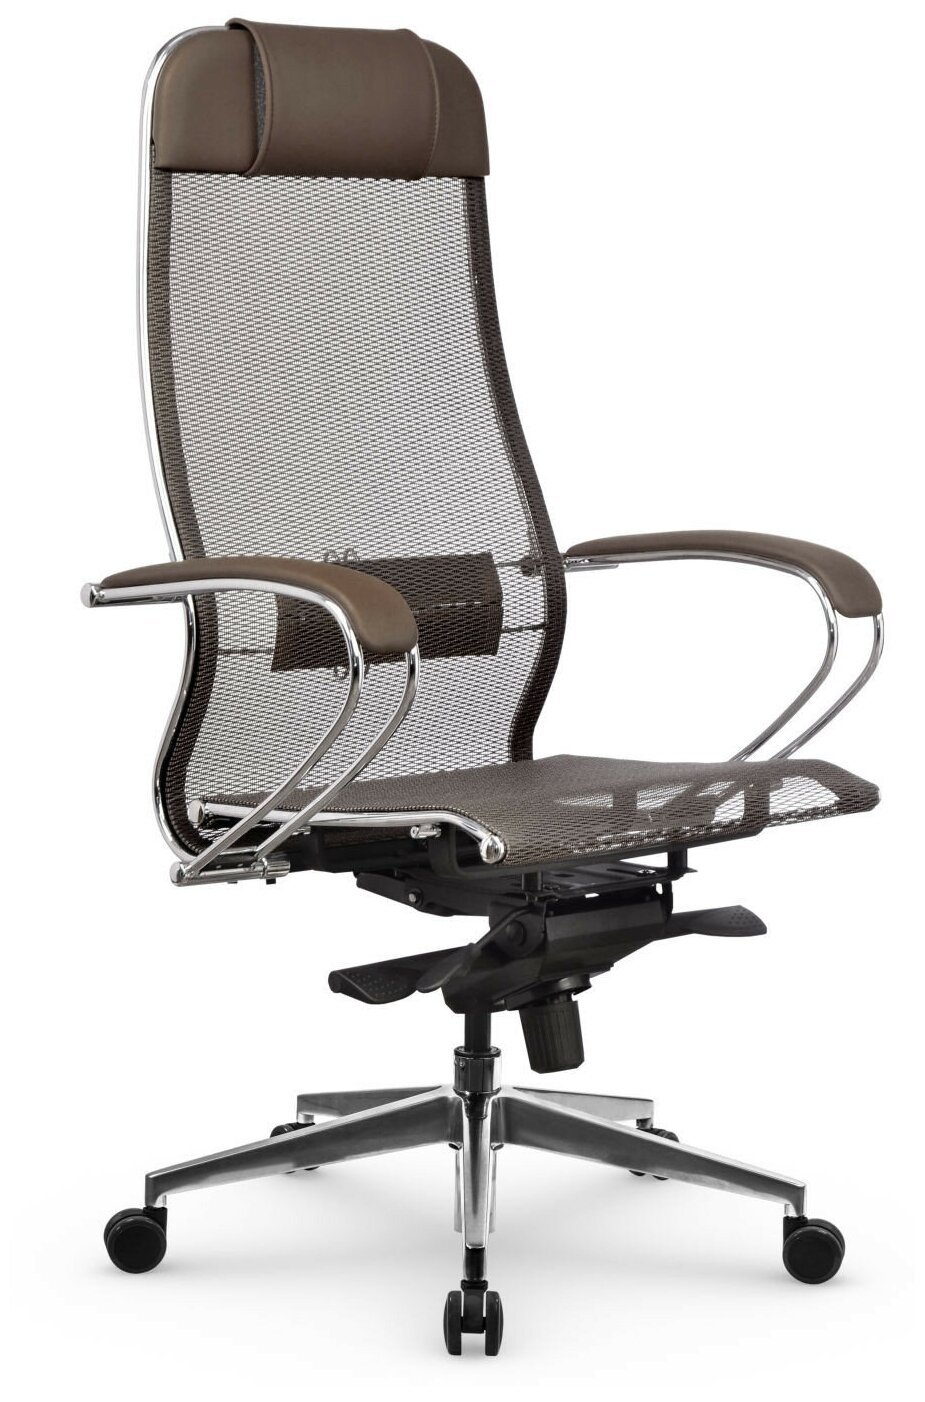 Компьютерное кресло Метта Samurai S-1.041 офисное, обивка: текстиль/искусственная кожа, цвет: светло-коричневый